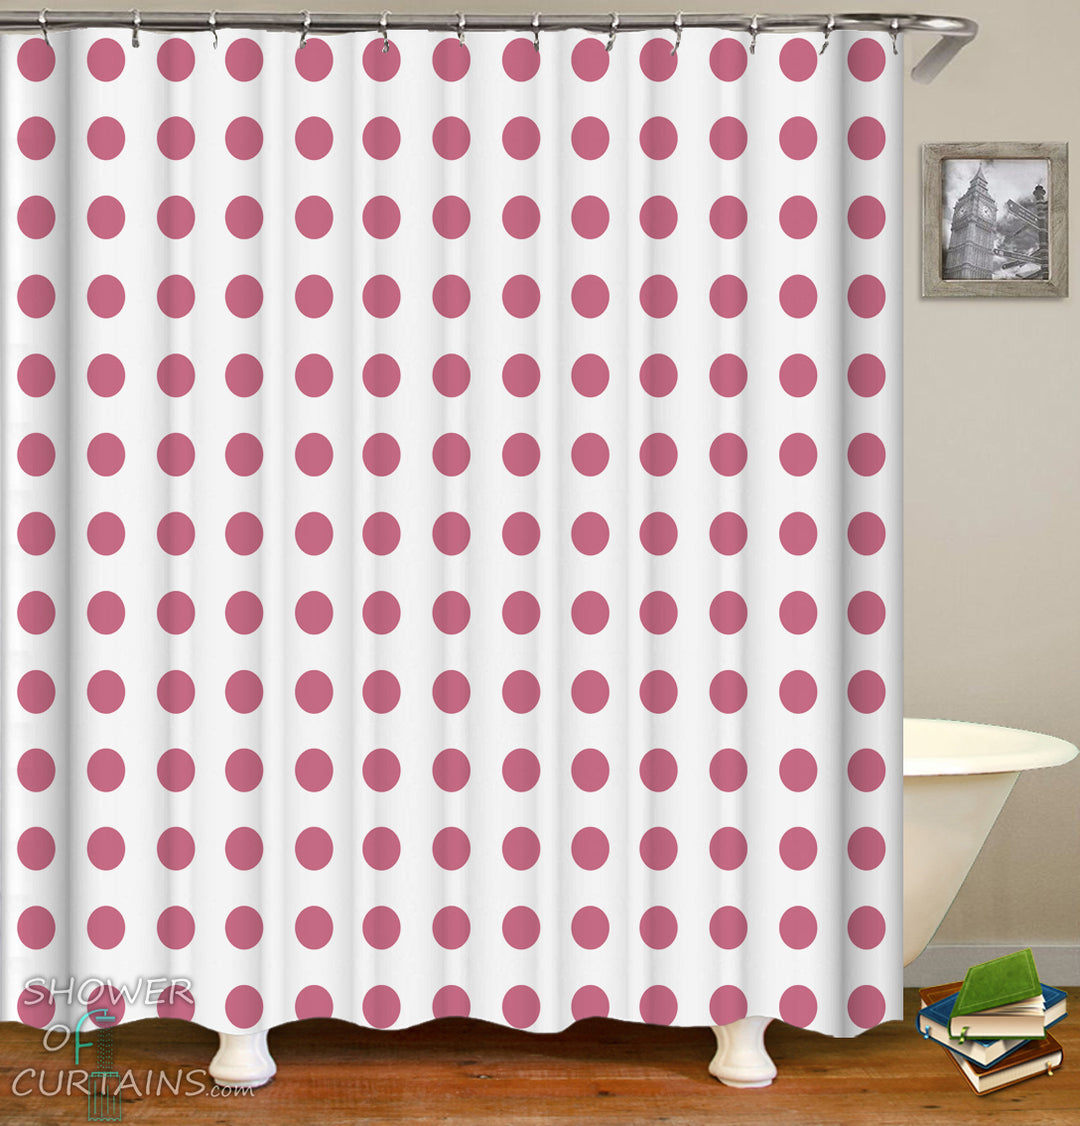 Classic Polka Dot Shower Curtain - Pinkish Red Polka Dot Bathroom Decor